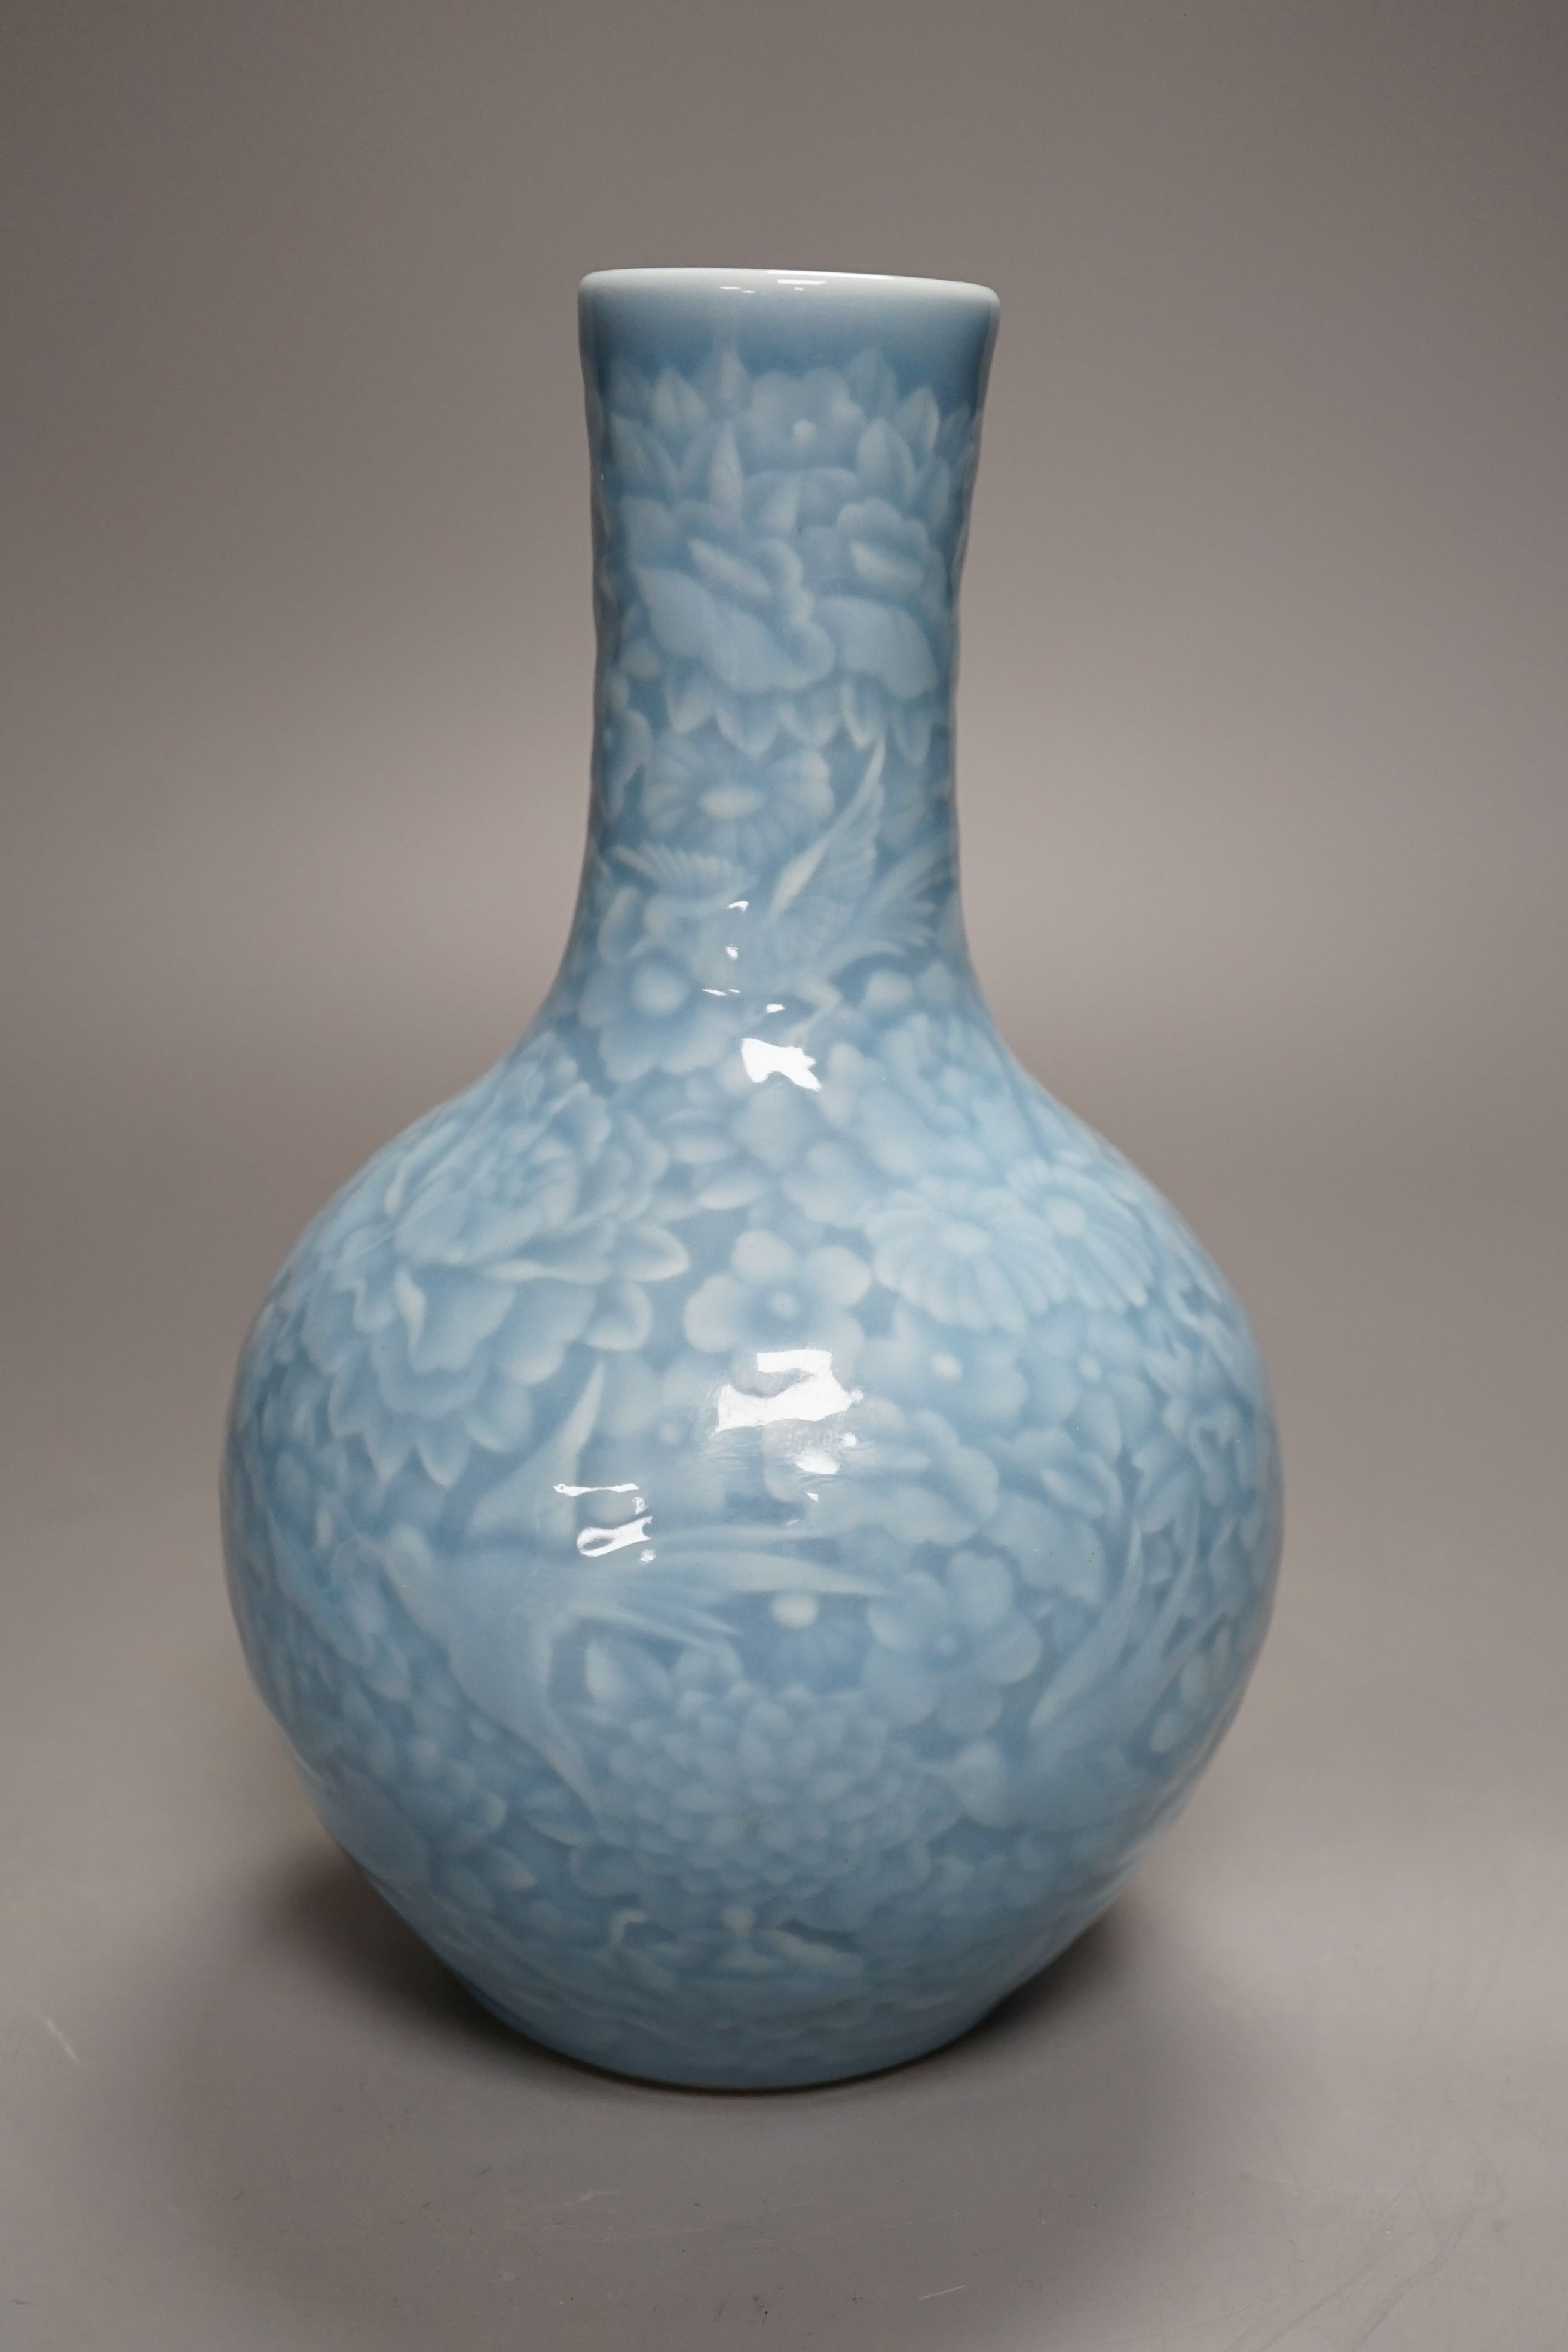 A Chinese blue-glazed moulded bottle vase - 23cm high - Image 4 of 4